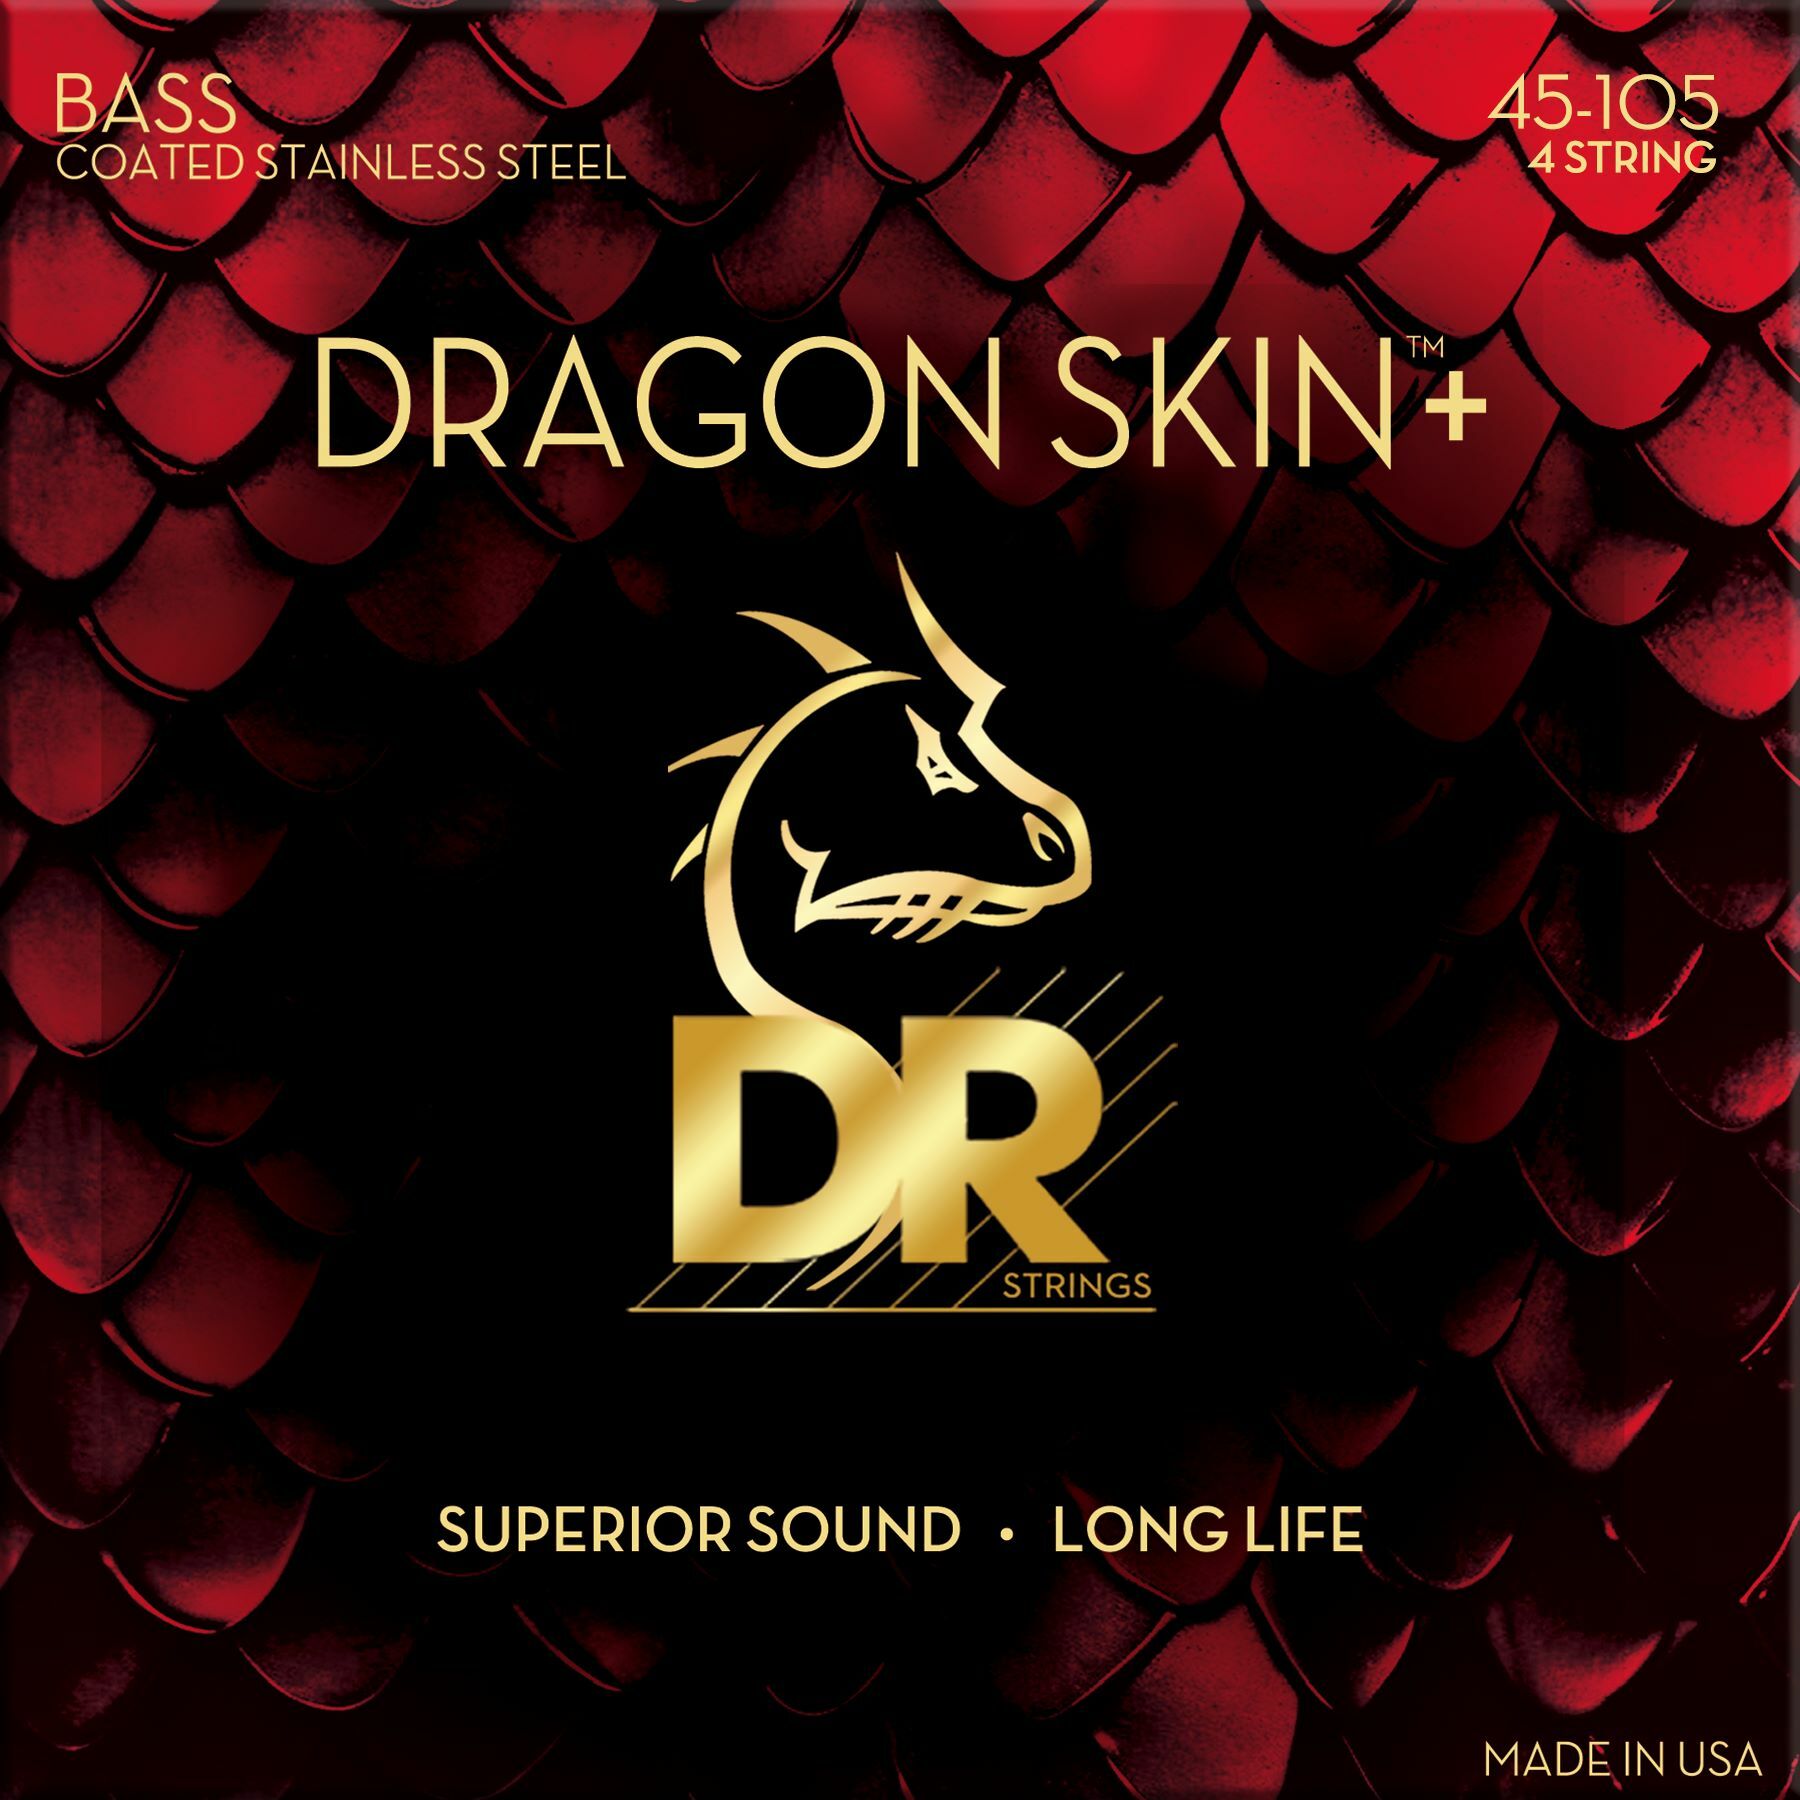 Dr Jeu De 4 Cordes Dragon Skin+ Core Technology Coated Wrap 45-100 - Elektrische bassnaren - Main picture